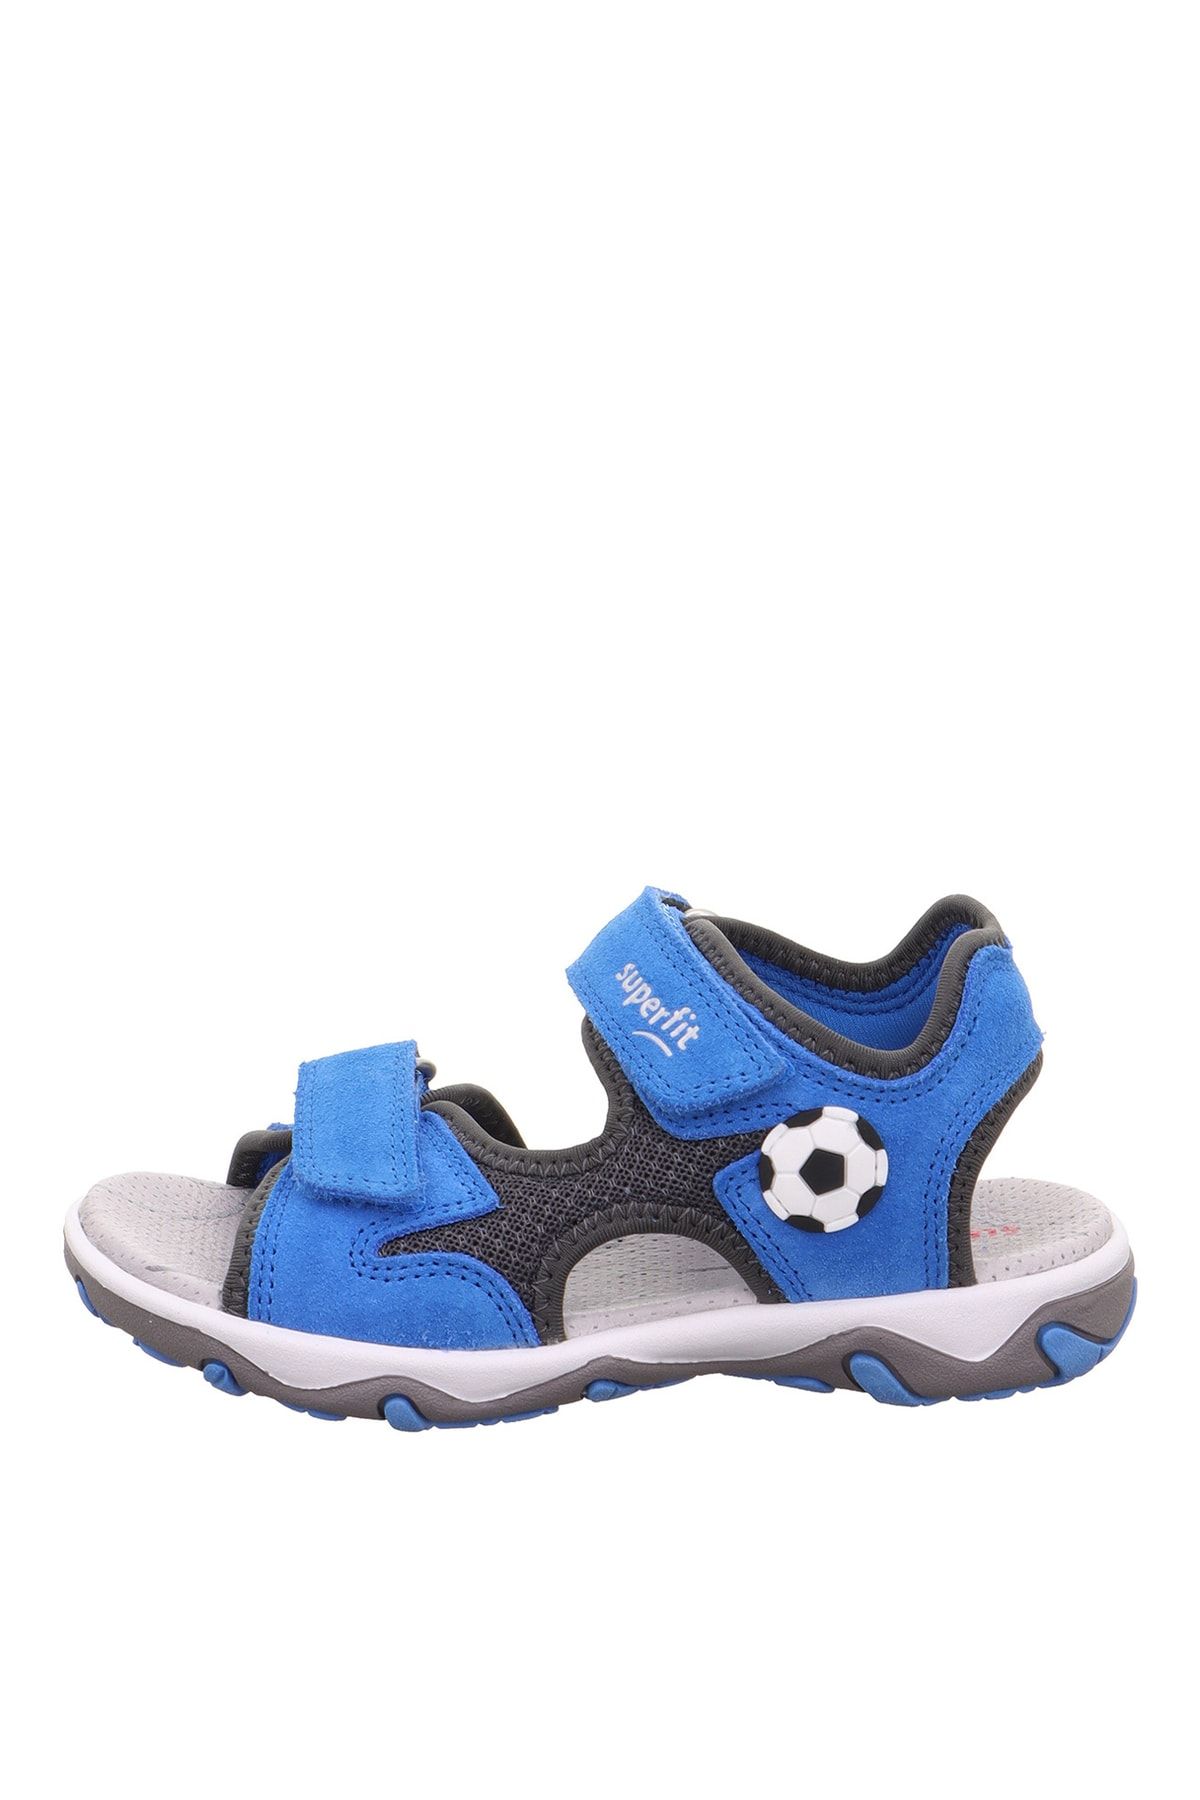 Superfit Mavi - Gri Erkek Çocuk Sandalet Mıke 3.0 1-009469-8040-1